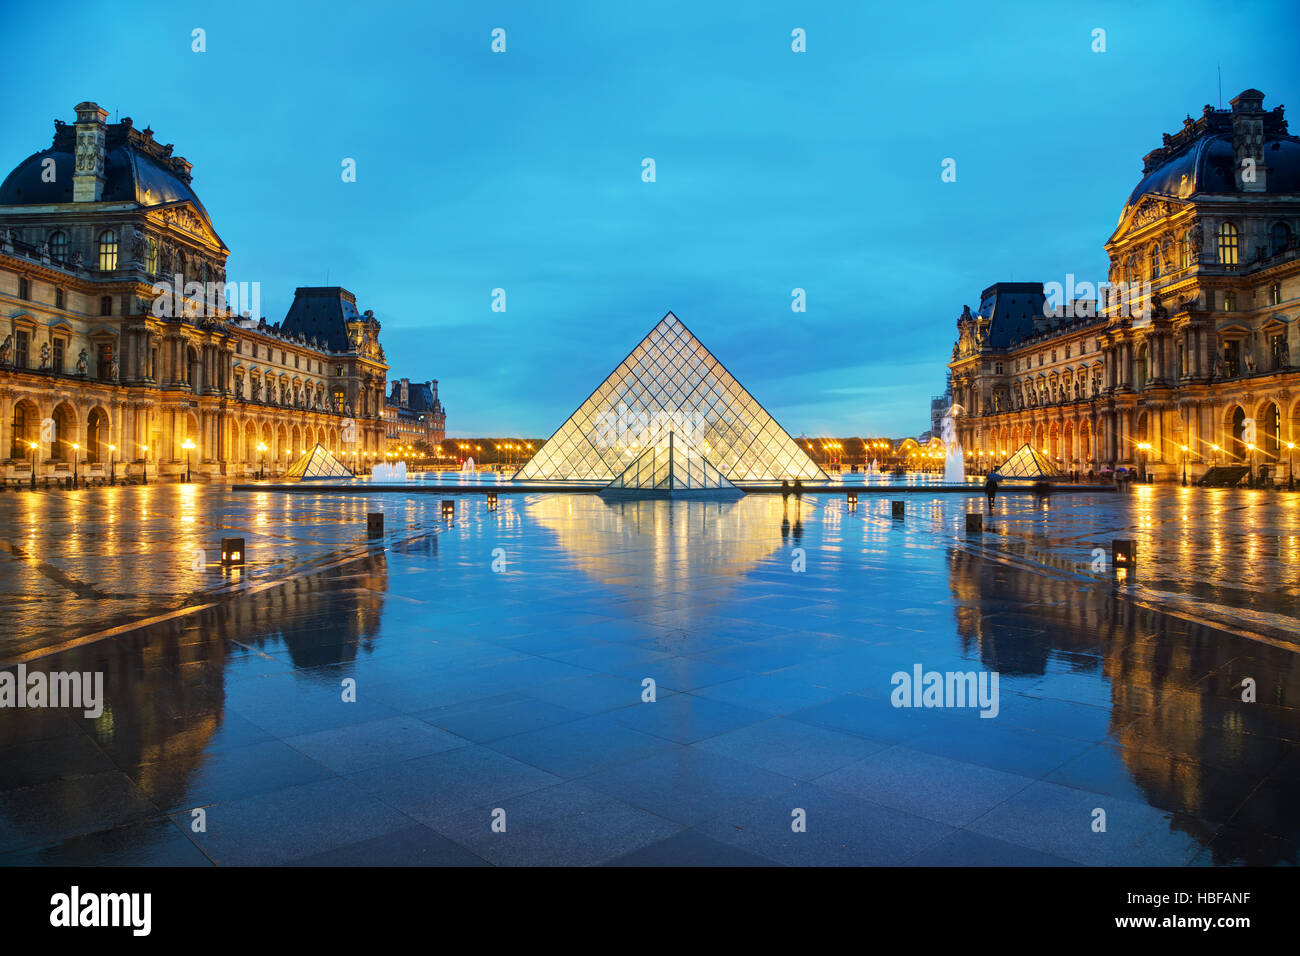 PARIS - le 4 novembre : La pyramide du Louvre le 4 novembre 2016 à Paris, France. Il sert de l'entrée principale du musée du Louvre. Achevé en 1989 Banque D'Images